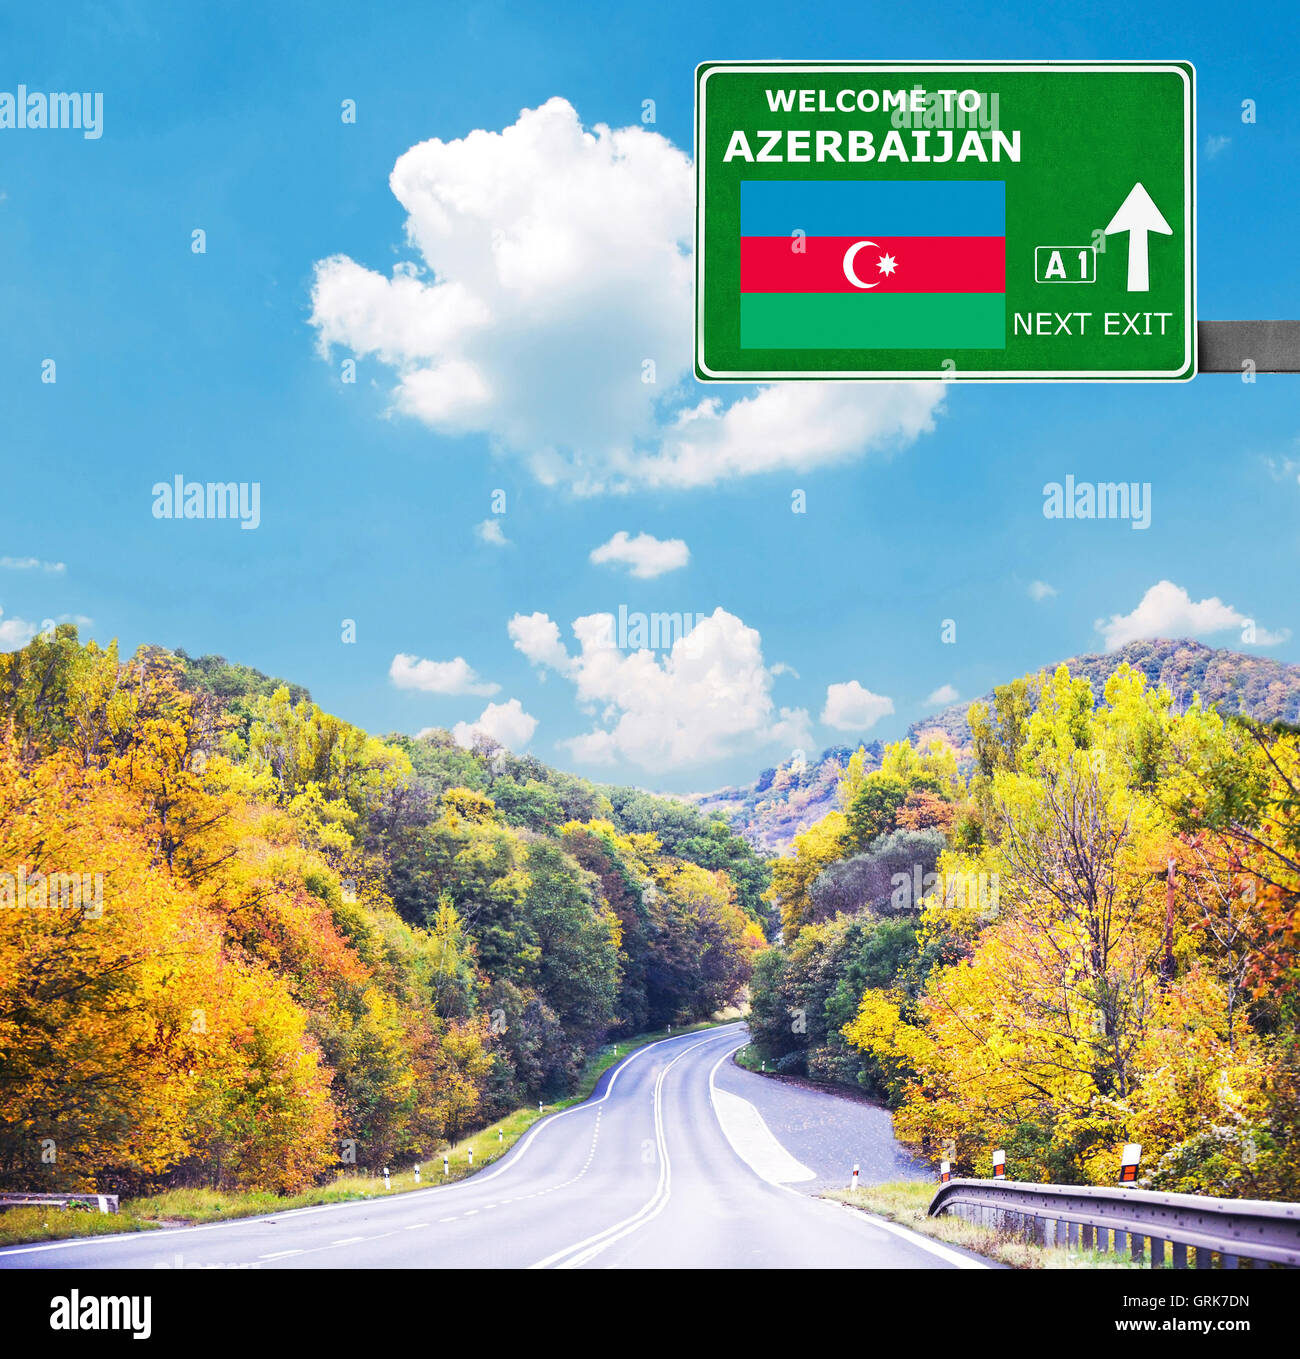 Aserbaidschan-Schild gegen klar blauen Himmel Stockfoto